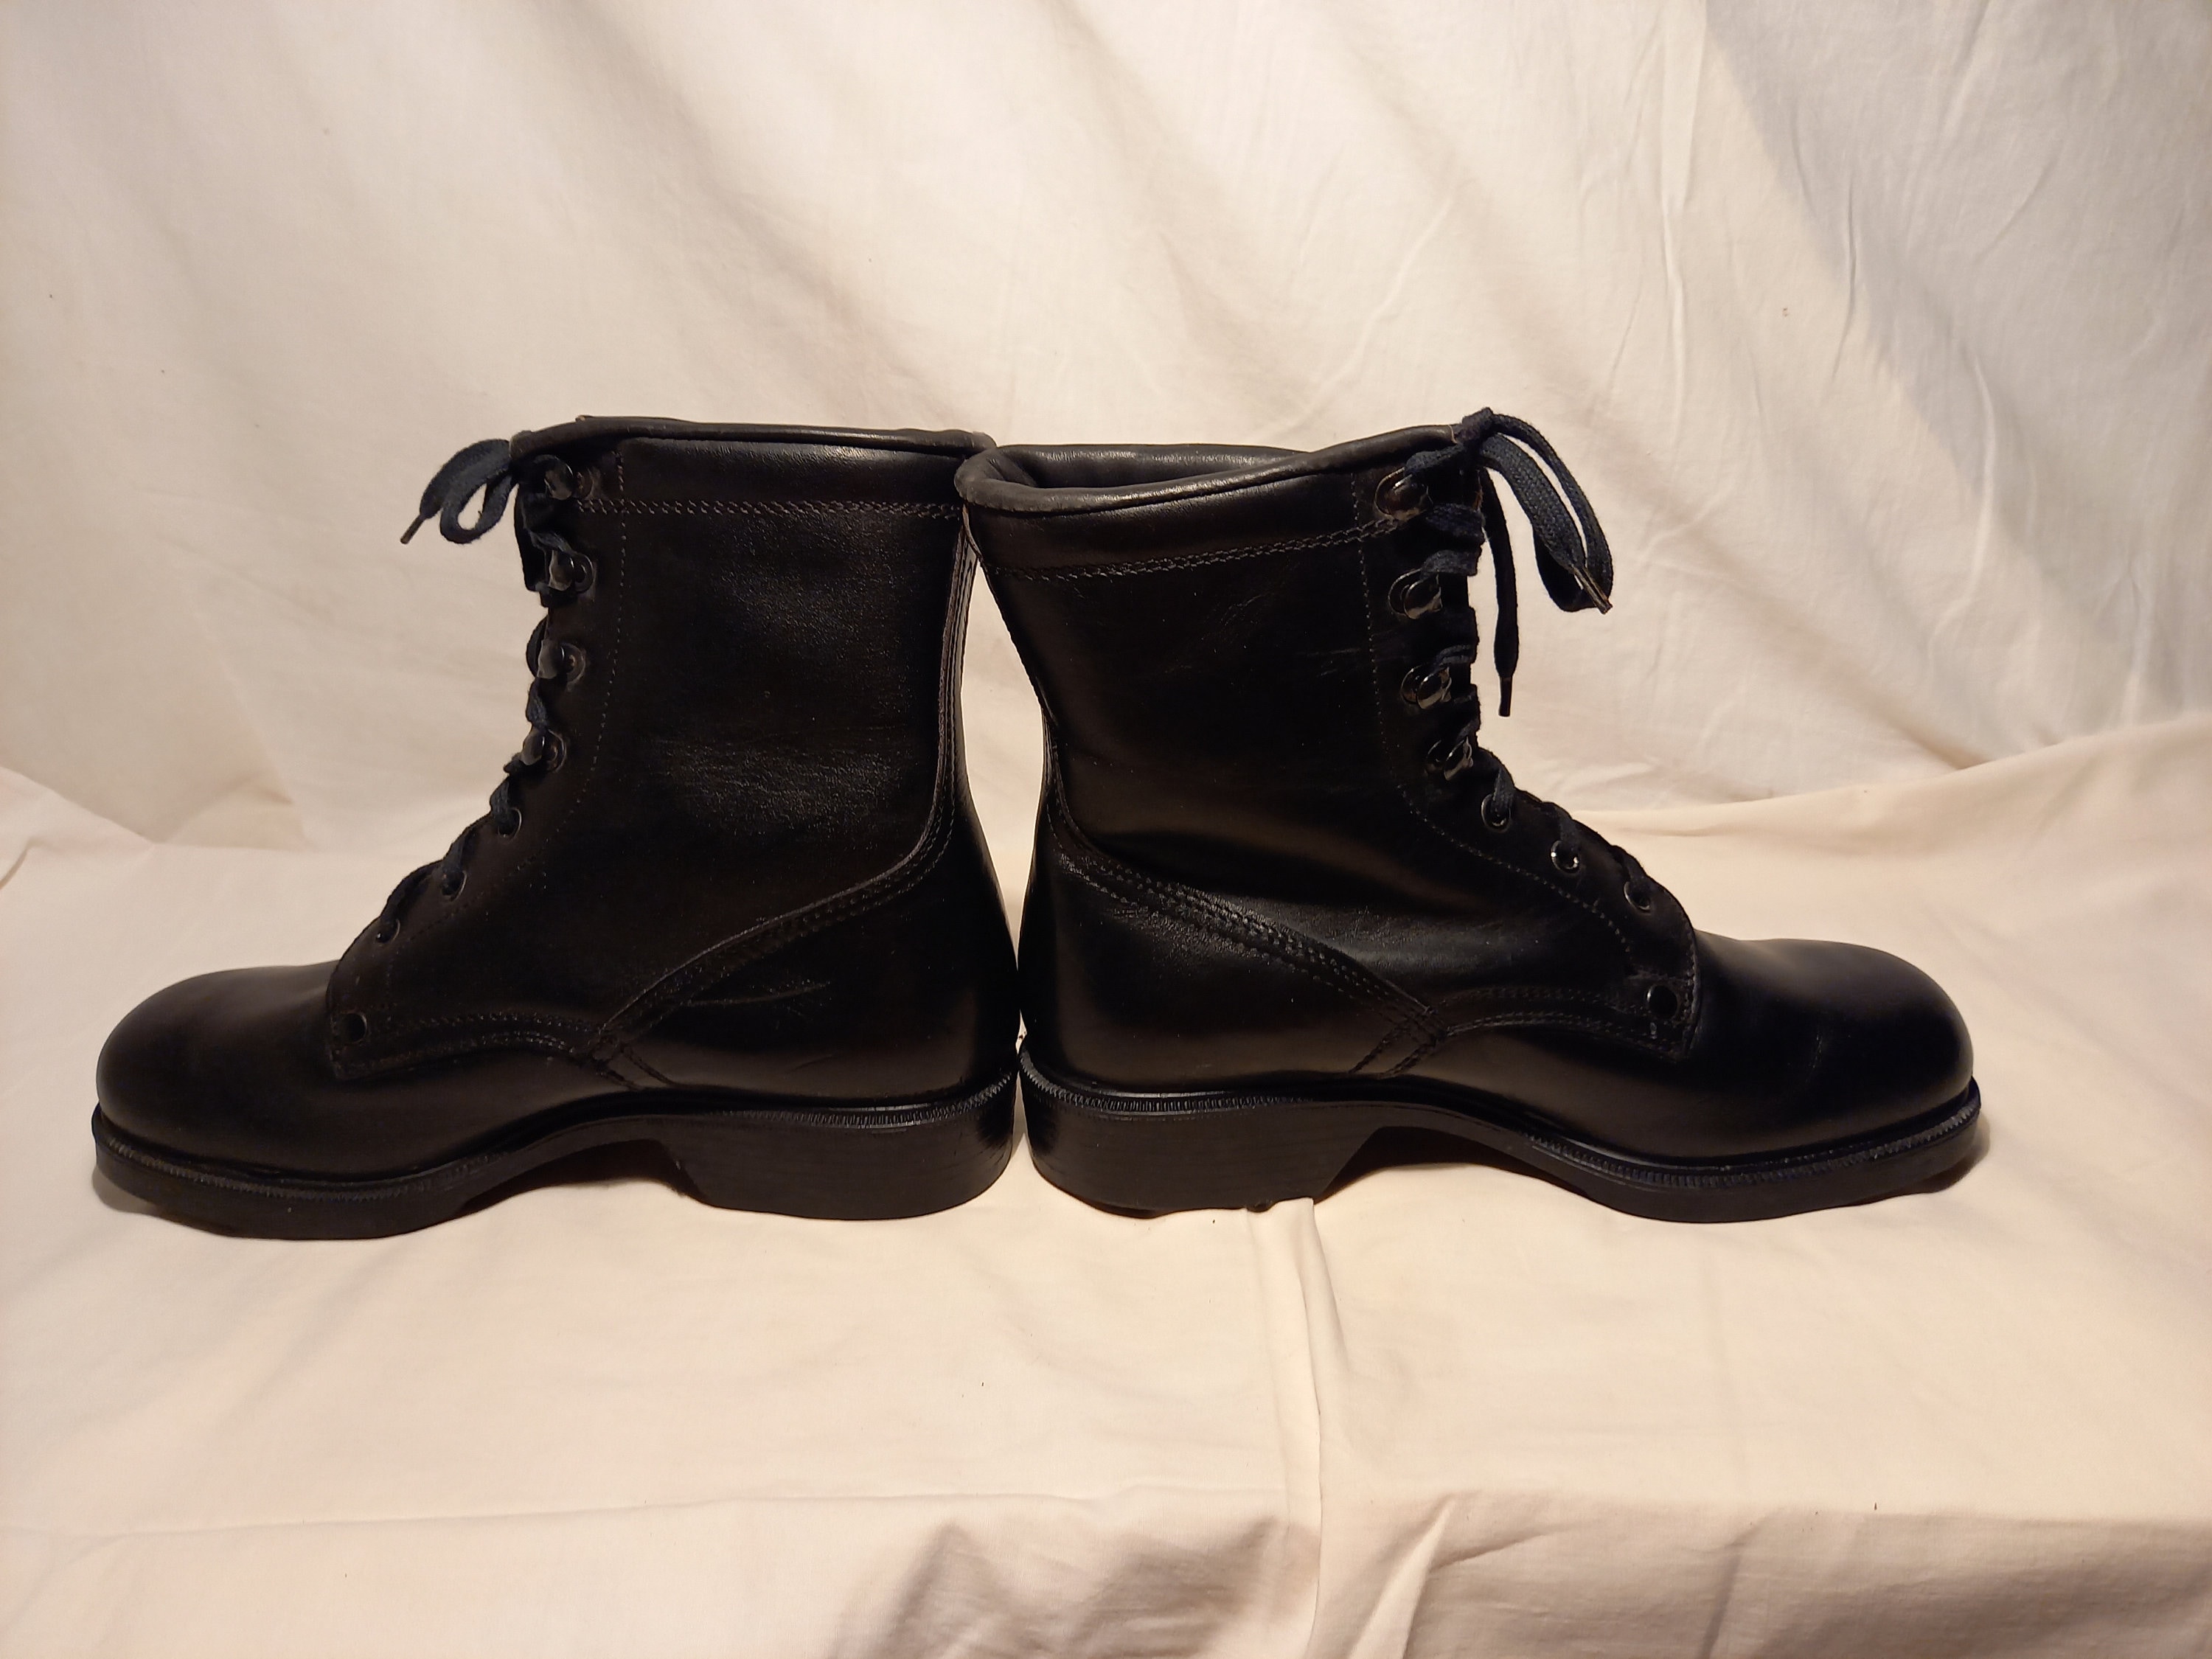 Zapatos Zapatos para hombre Botas Botas de trabajo y estilo militar Botas de cuero negro del ejército búlgaro vintage de 1980 